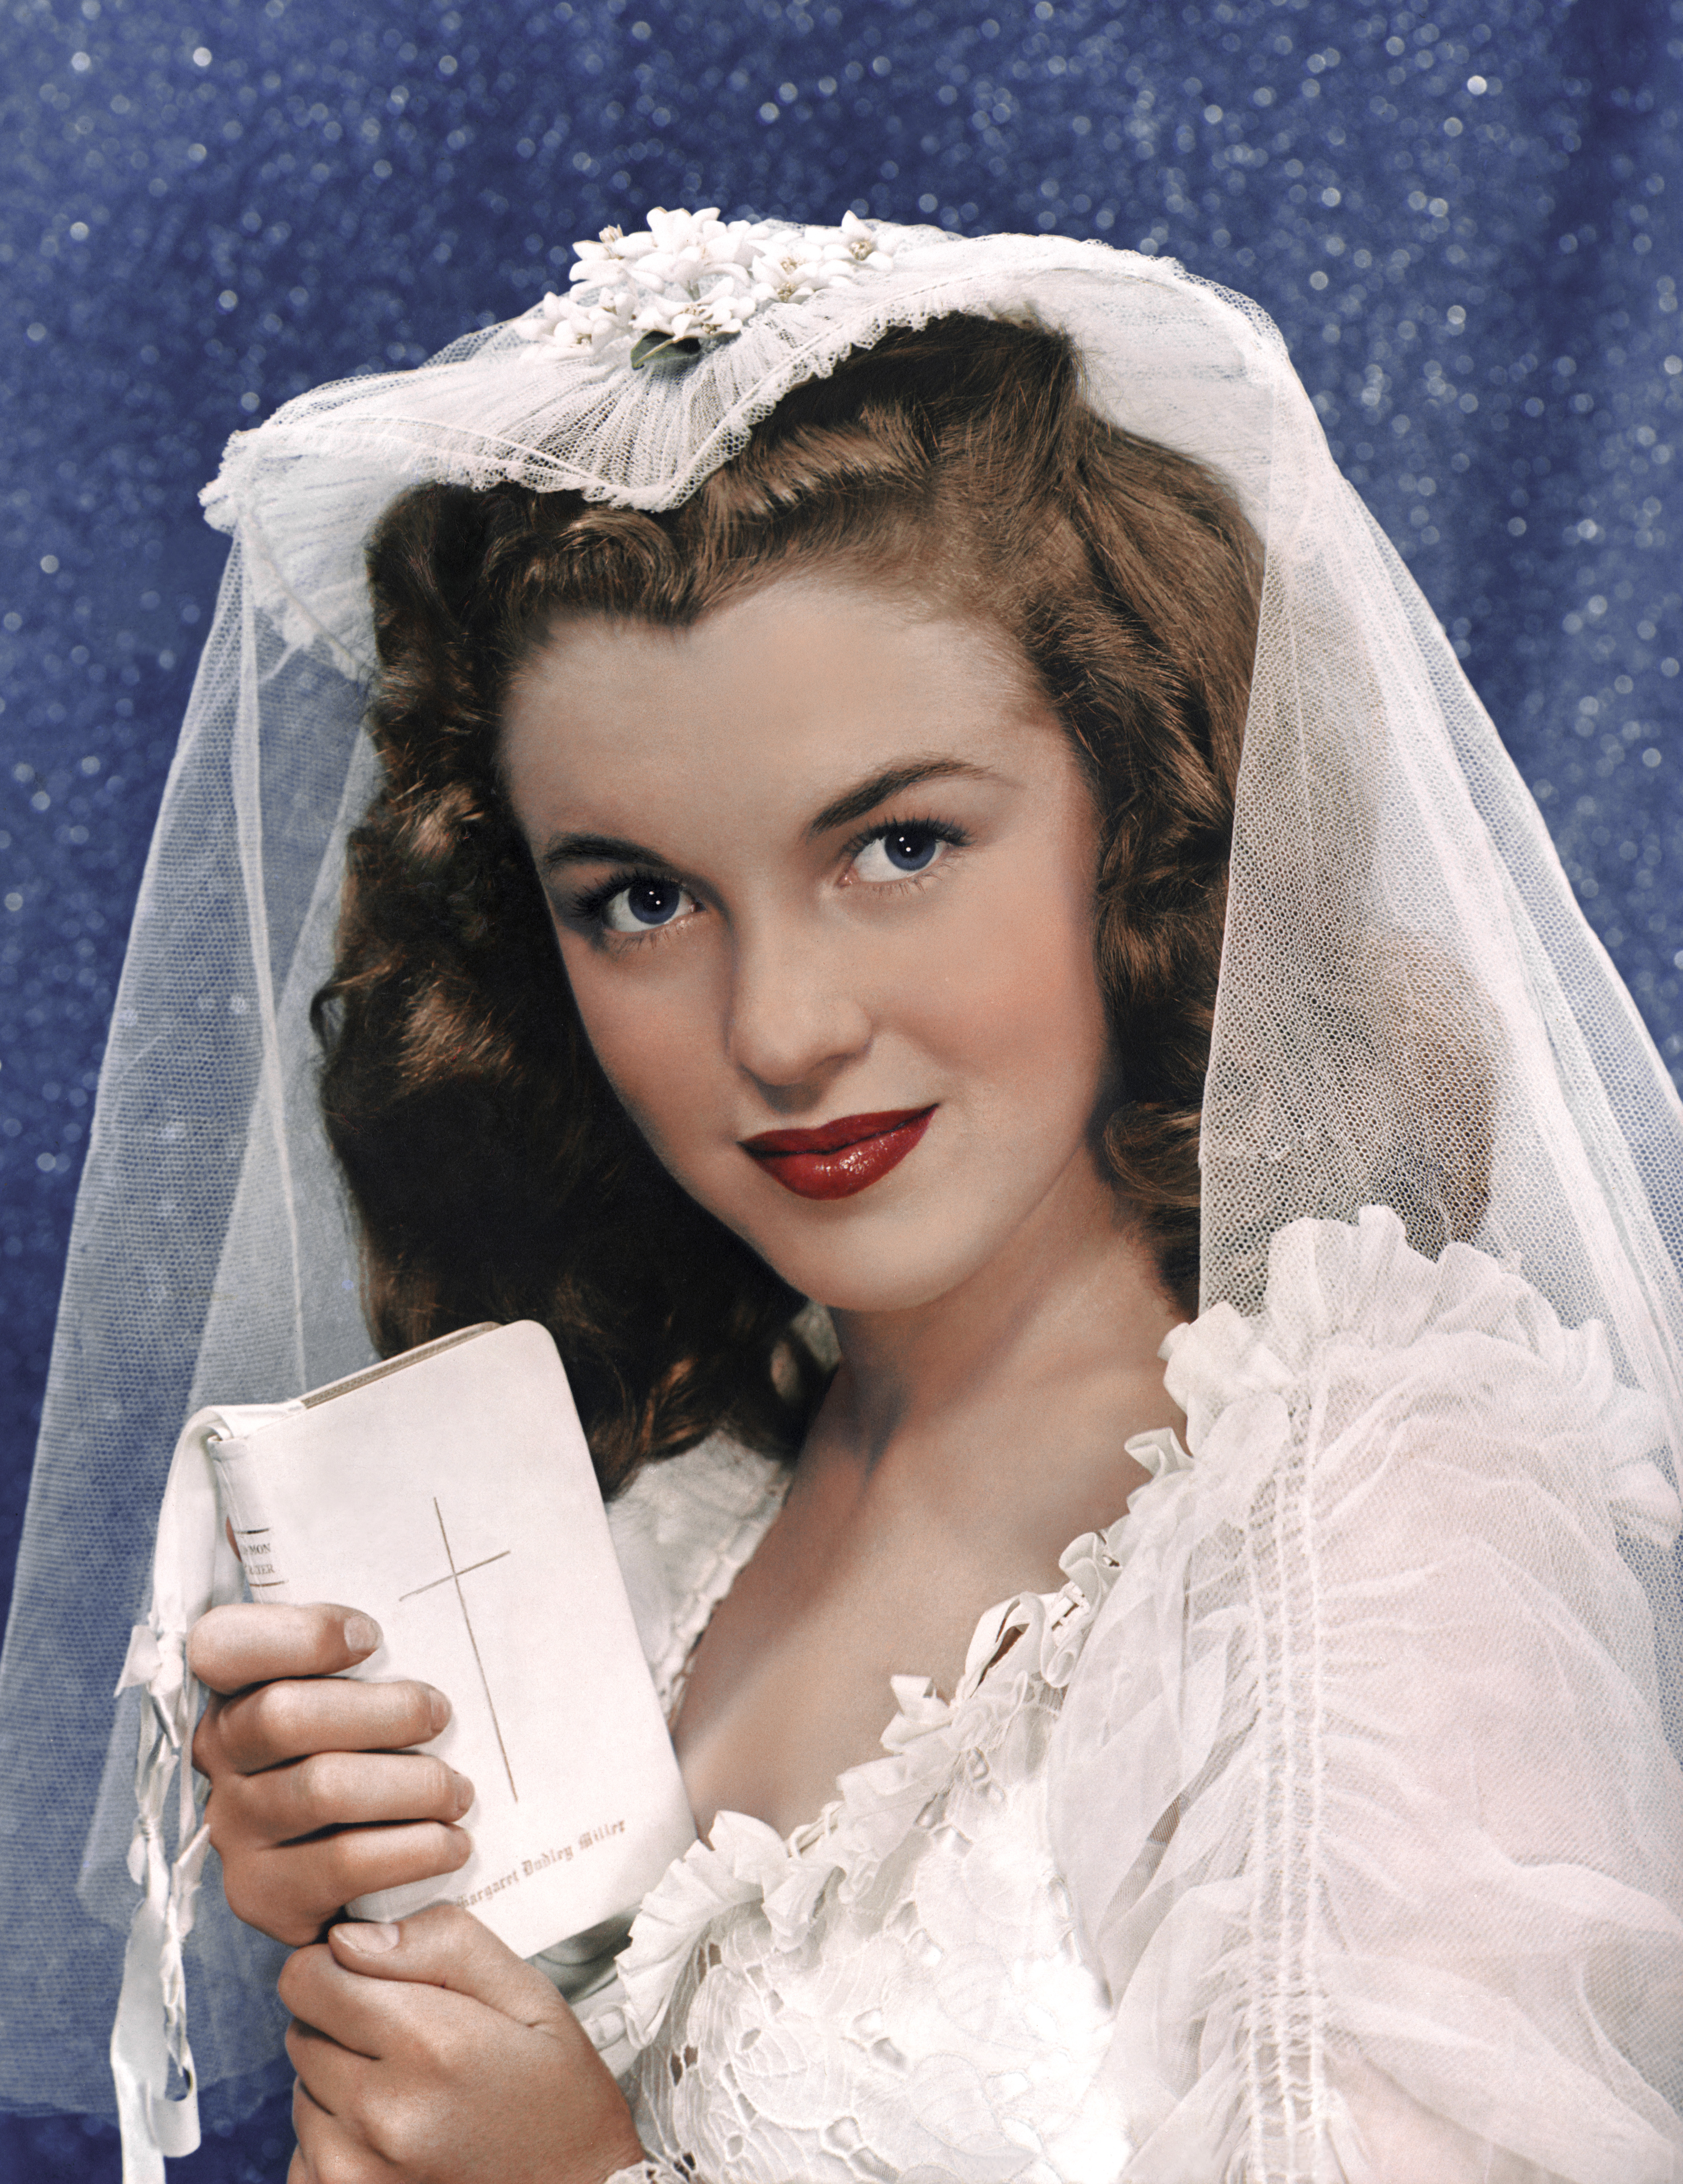 Marilyn Monroe, als sie noch Norma Jeane Mortenson hieß, bei ihrer ersten Hochzeit mit sechzehn Jahren in Los Angeles, 1946 | Quelle: Getty Images